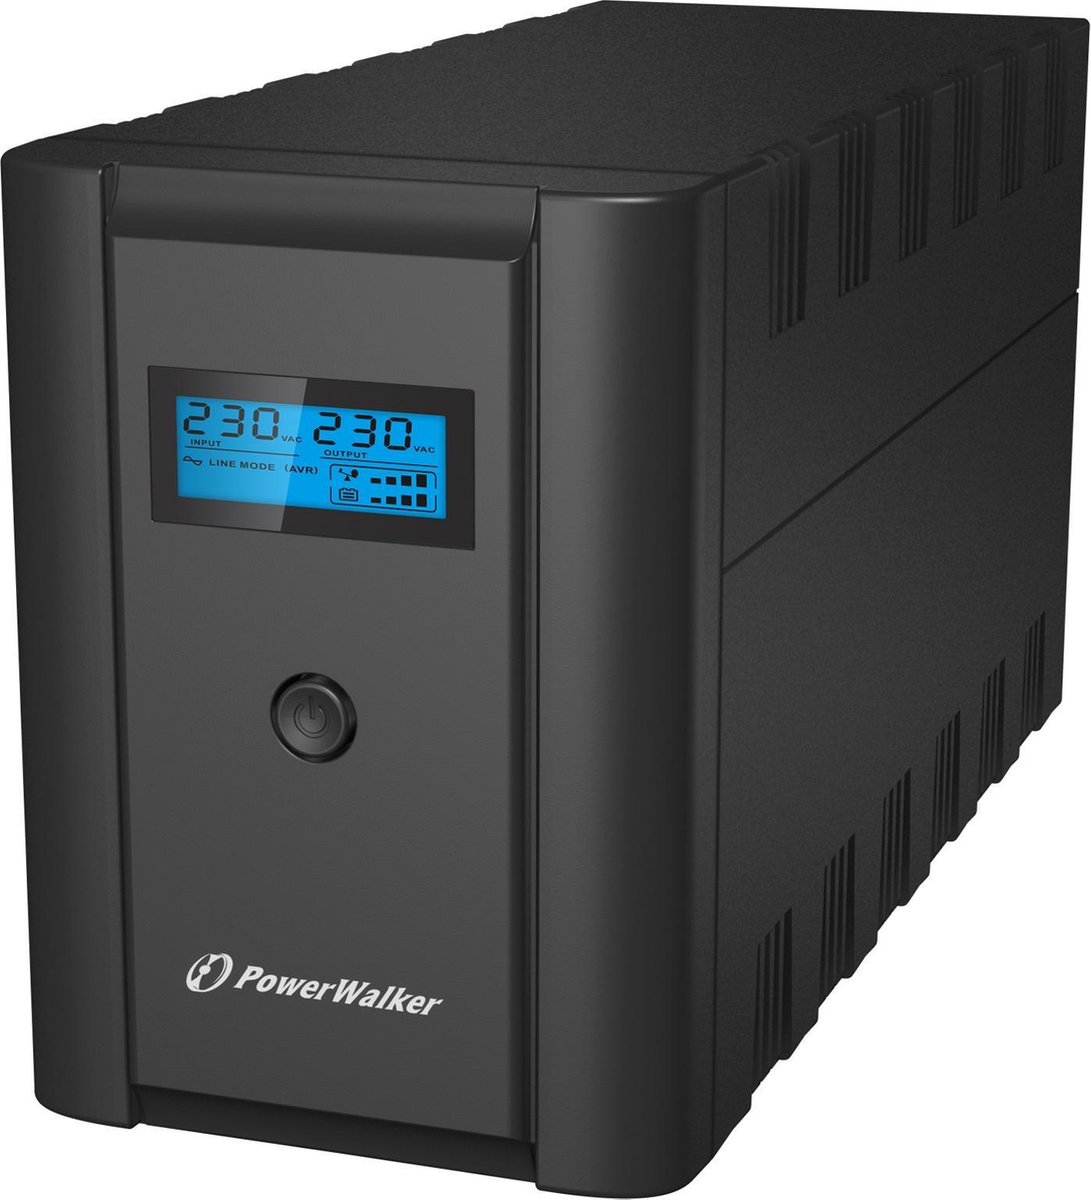 Powerwalker VI2200 - 2200VA UPS line interactive